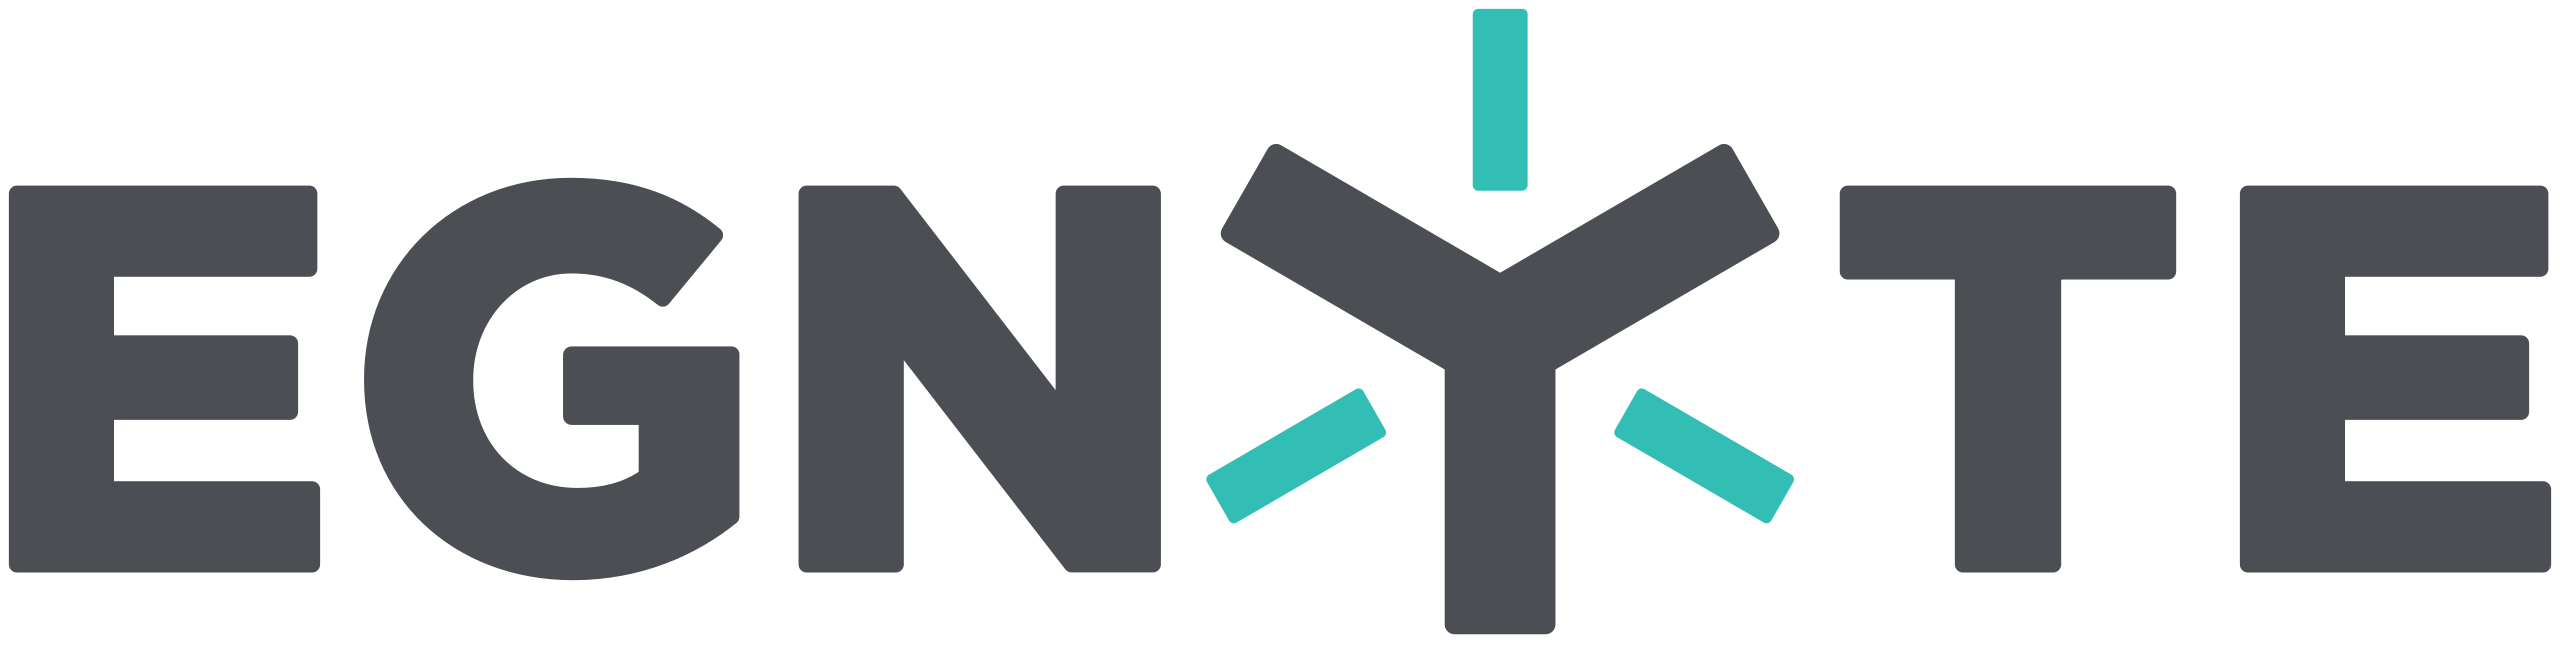 logotipo da egnyte